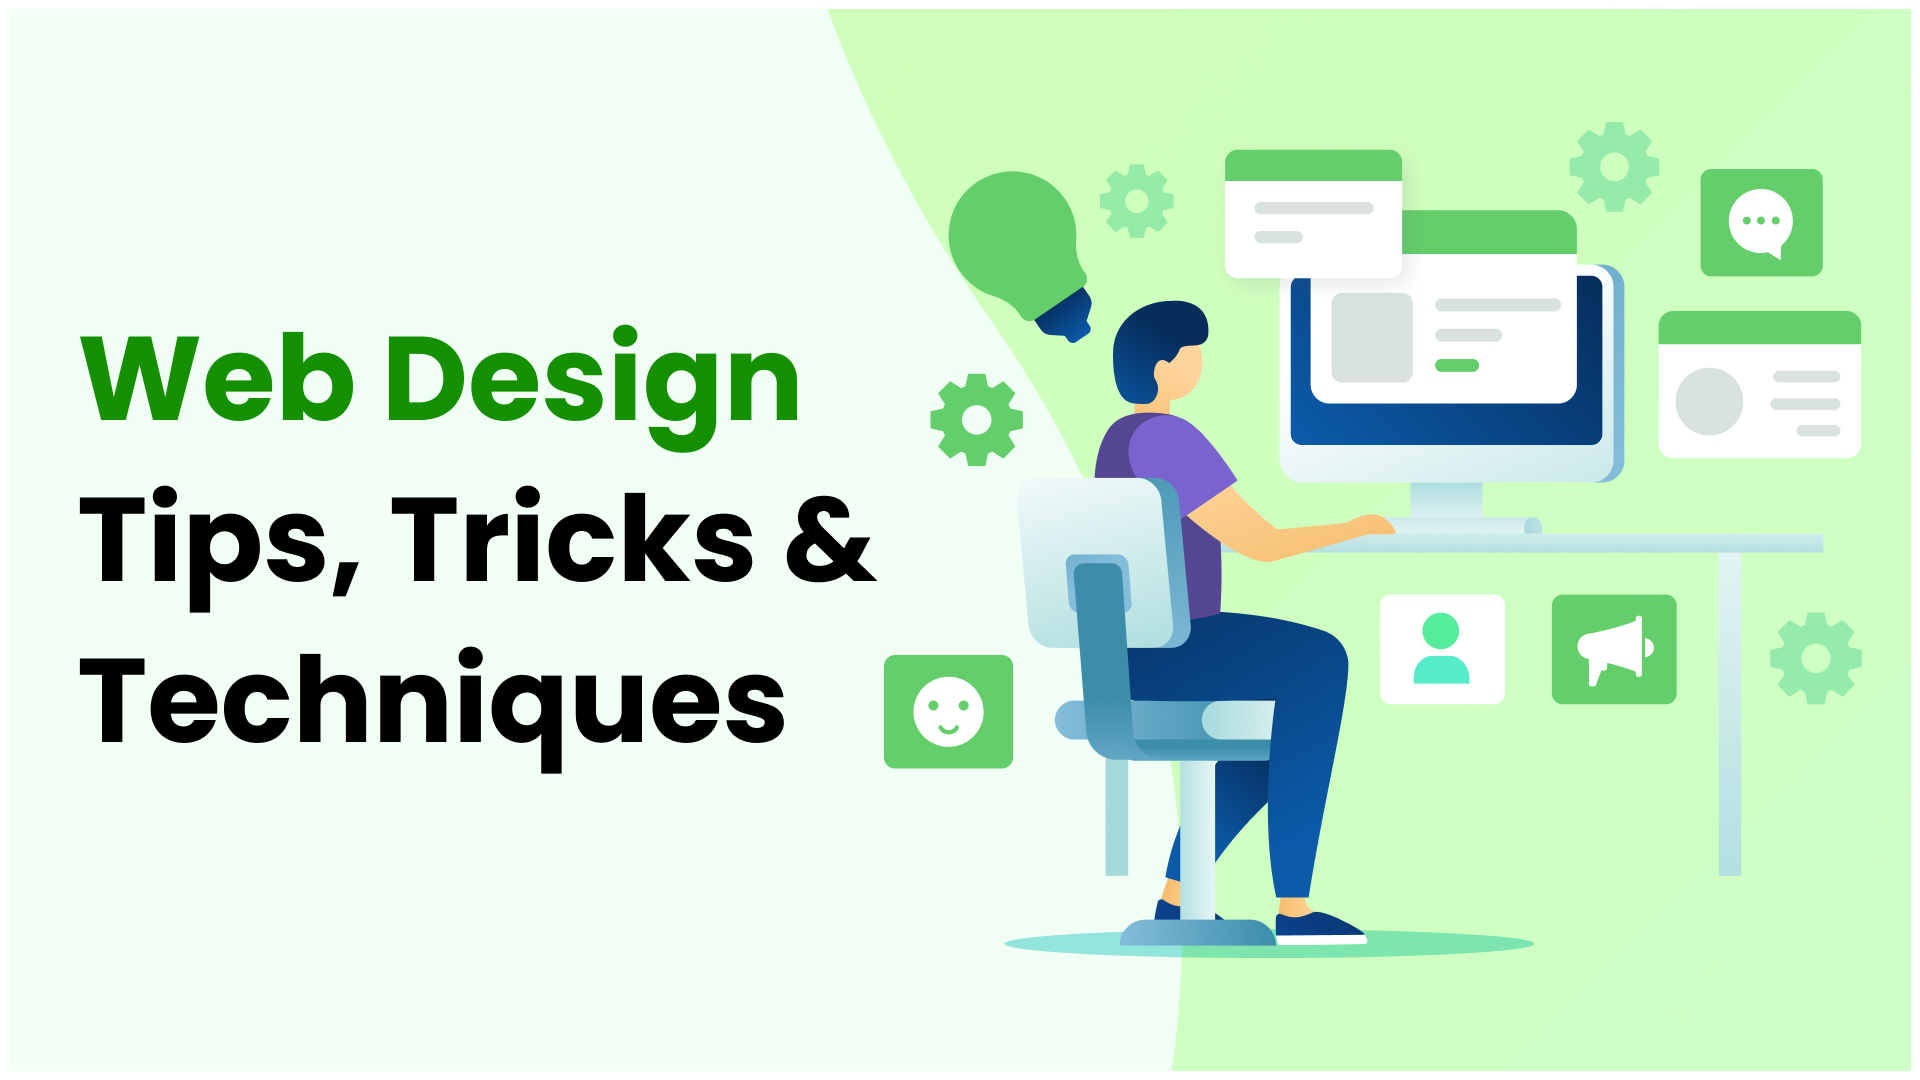 Web Design Tips, Tricks & Techniques